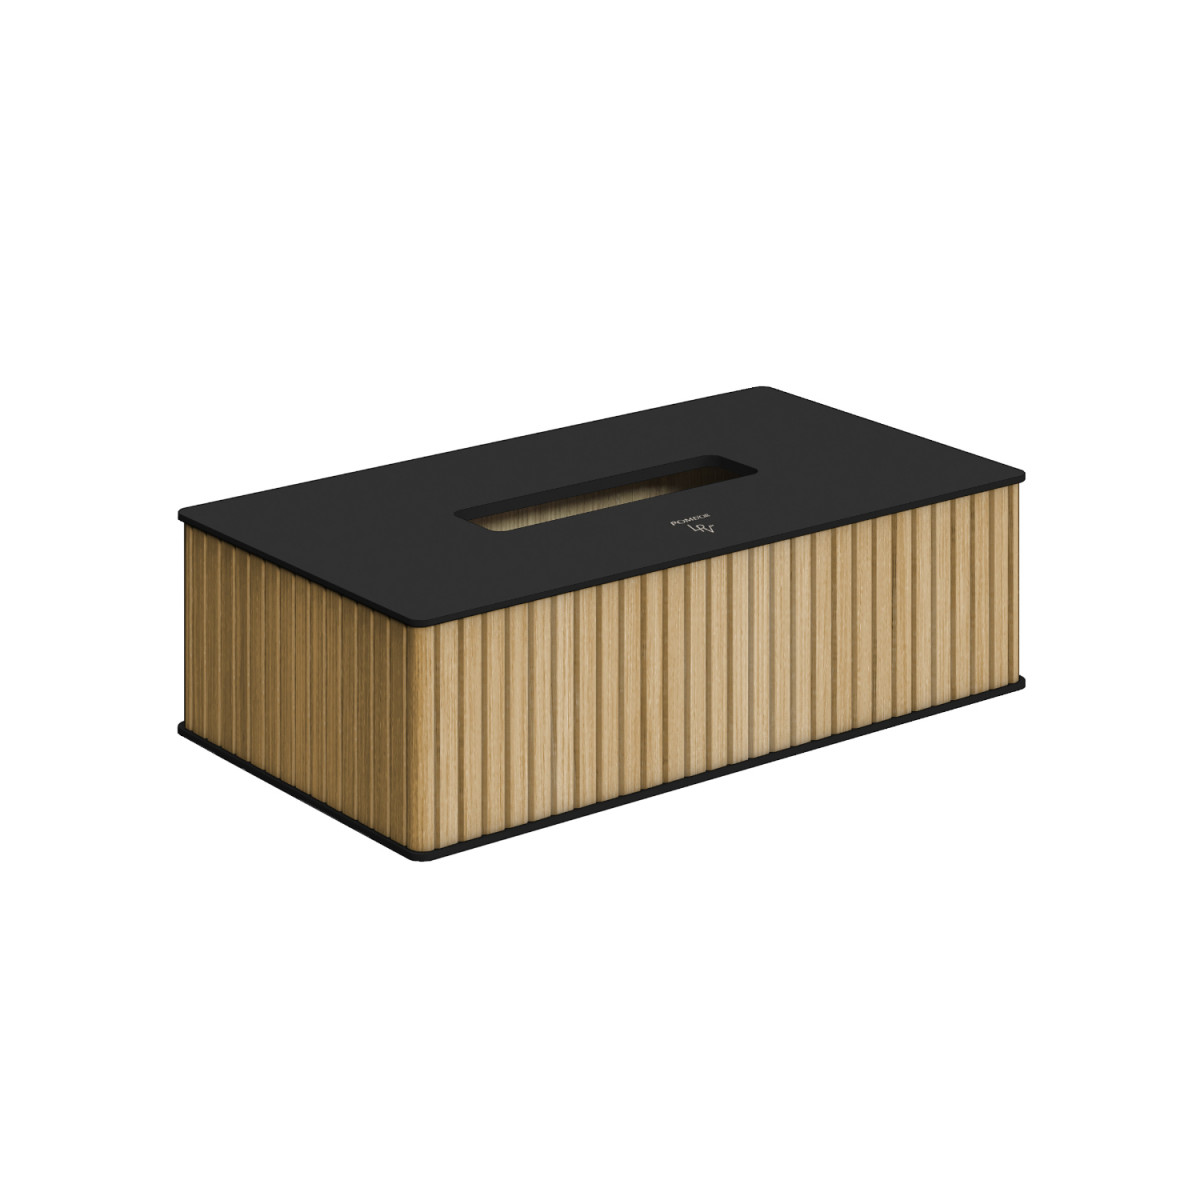 Caja Pañuelos Grande Rellenable, Baño, Dispensador Toallitas Papel, Tapa  Bambú, 10x23x13 cm, Negro y Natural